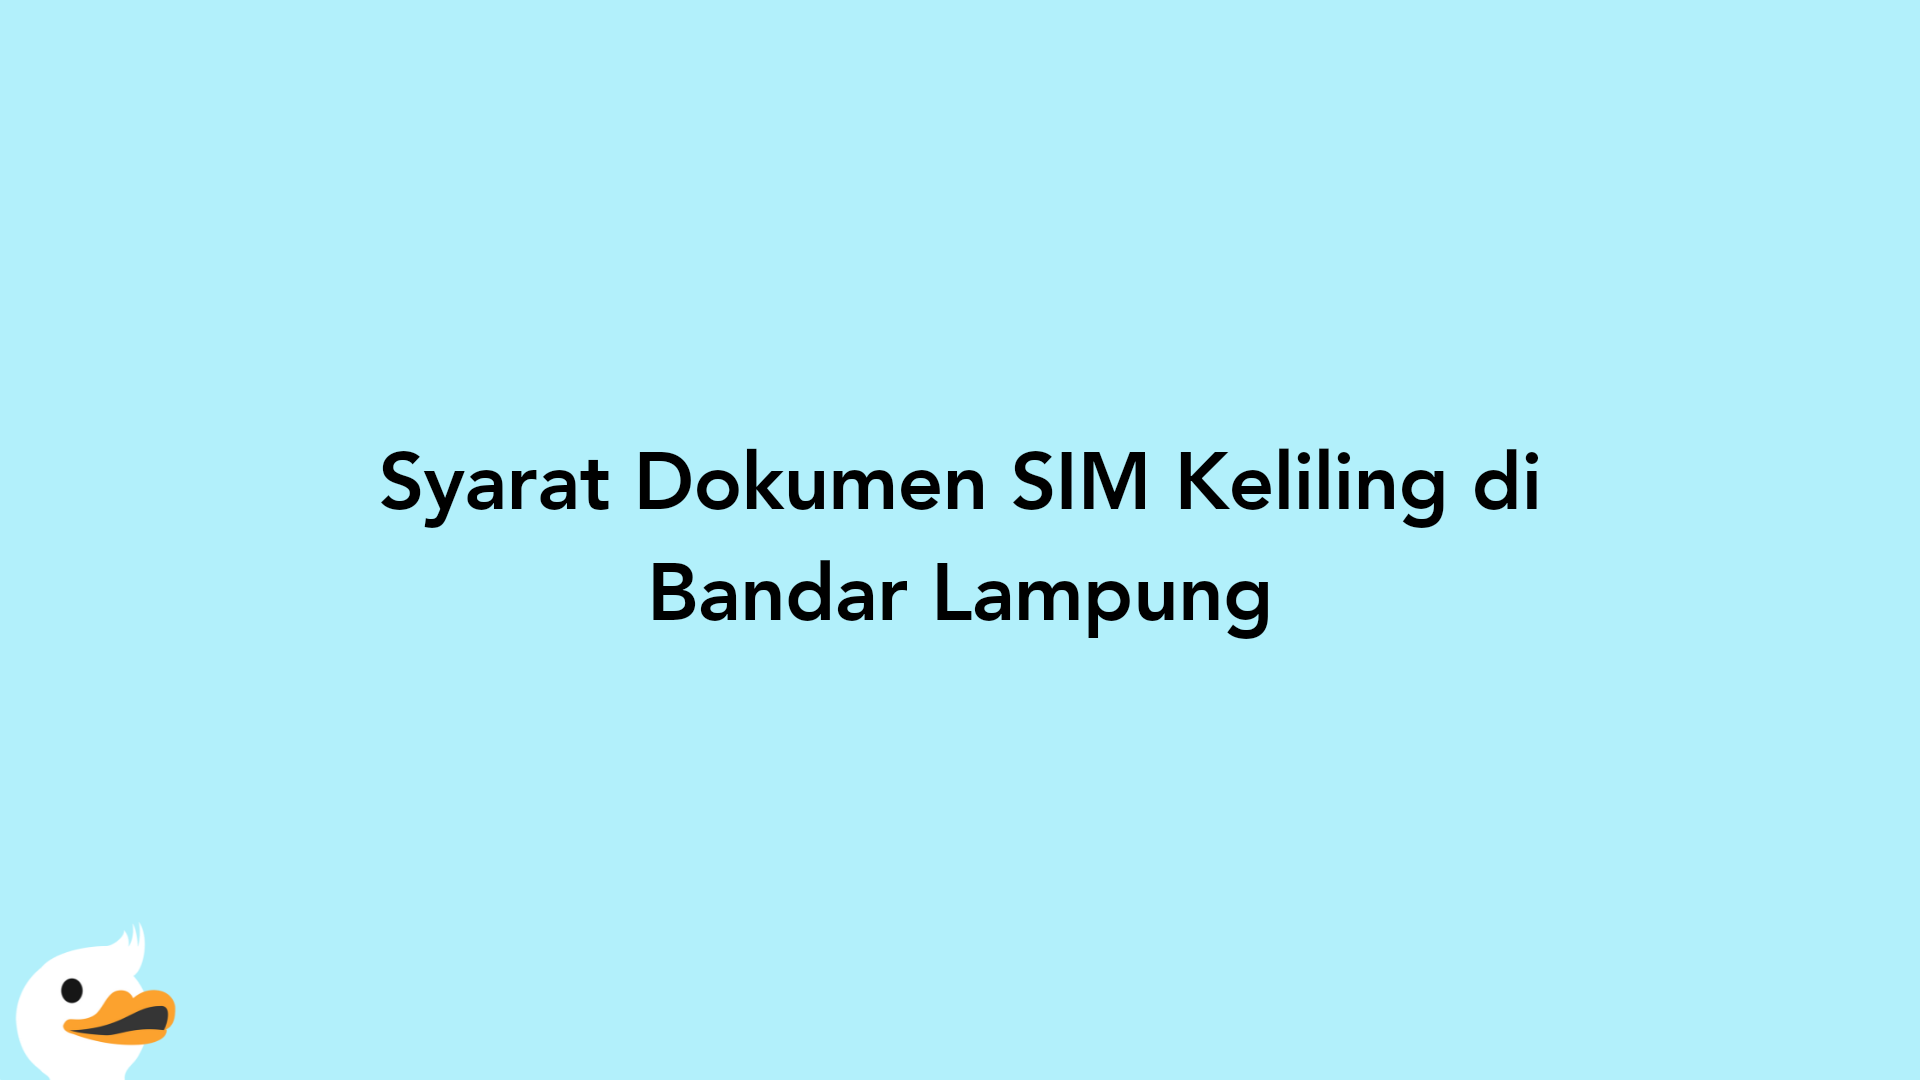 Syarat Dokumen SIM Keliling di Bandar Lampung